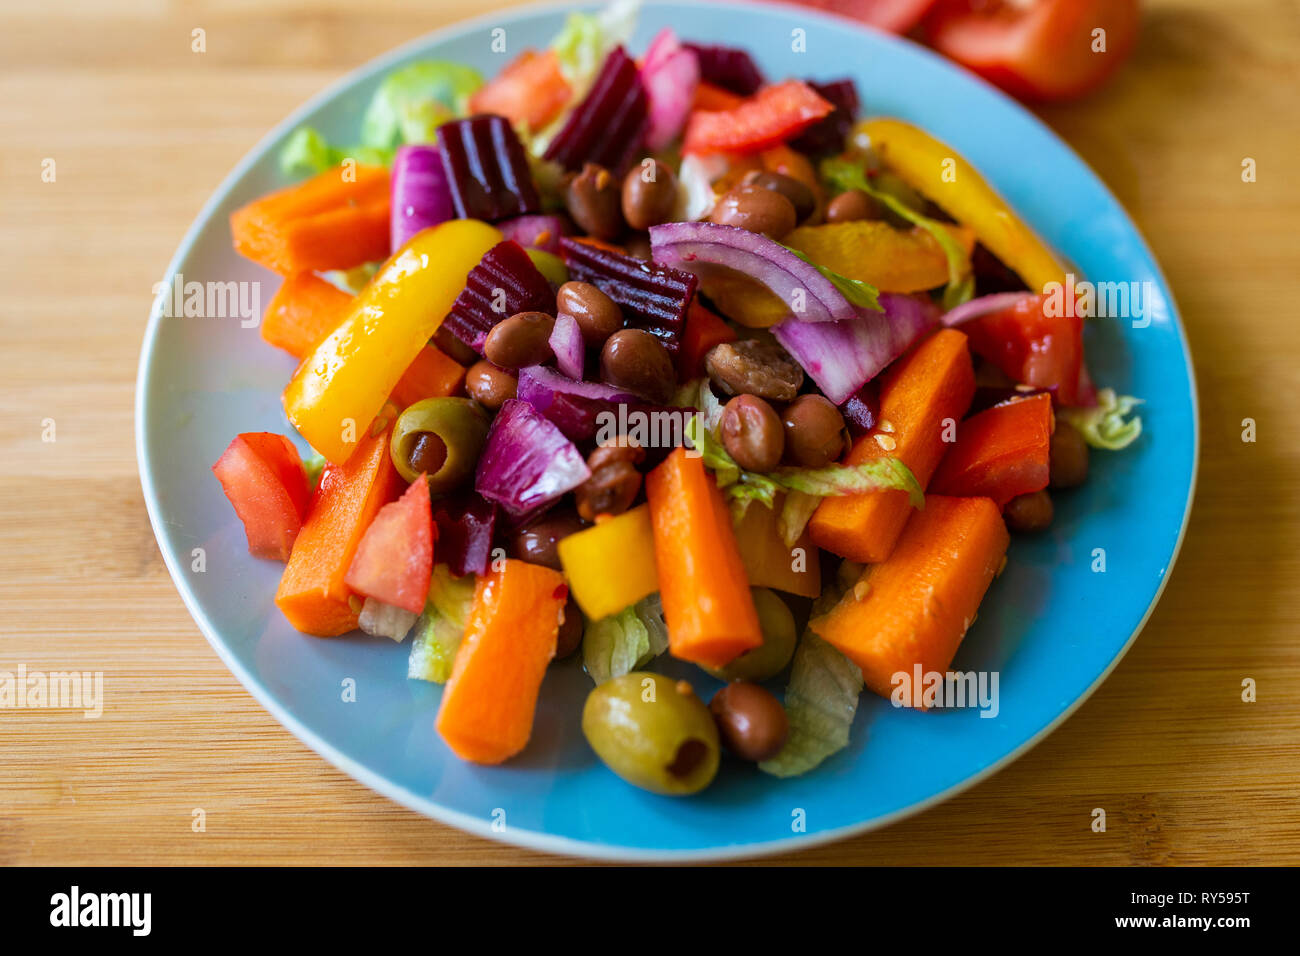 Ein farbenfroher, lebhafter veganer Salat auf einem kleinen Teller. Pflanzenbasiert Stockfoto